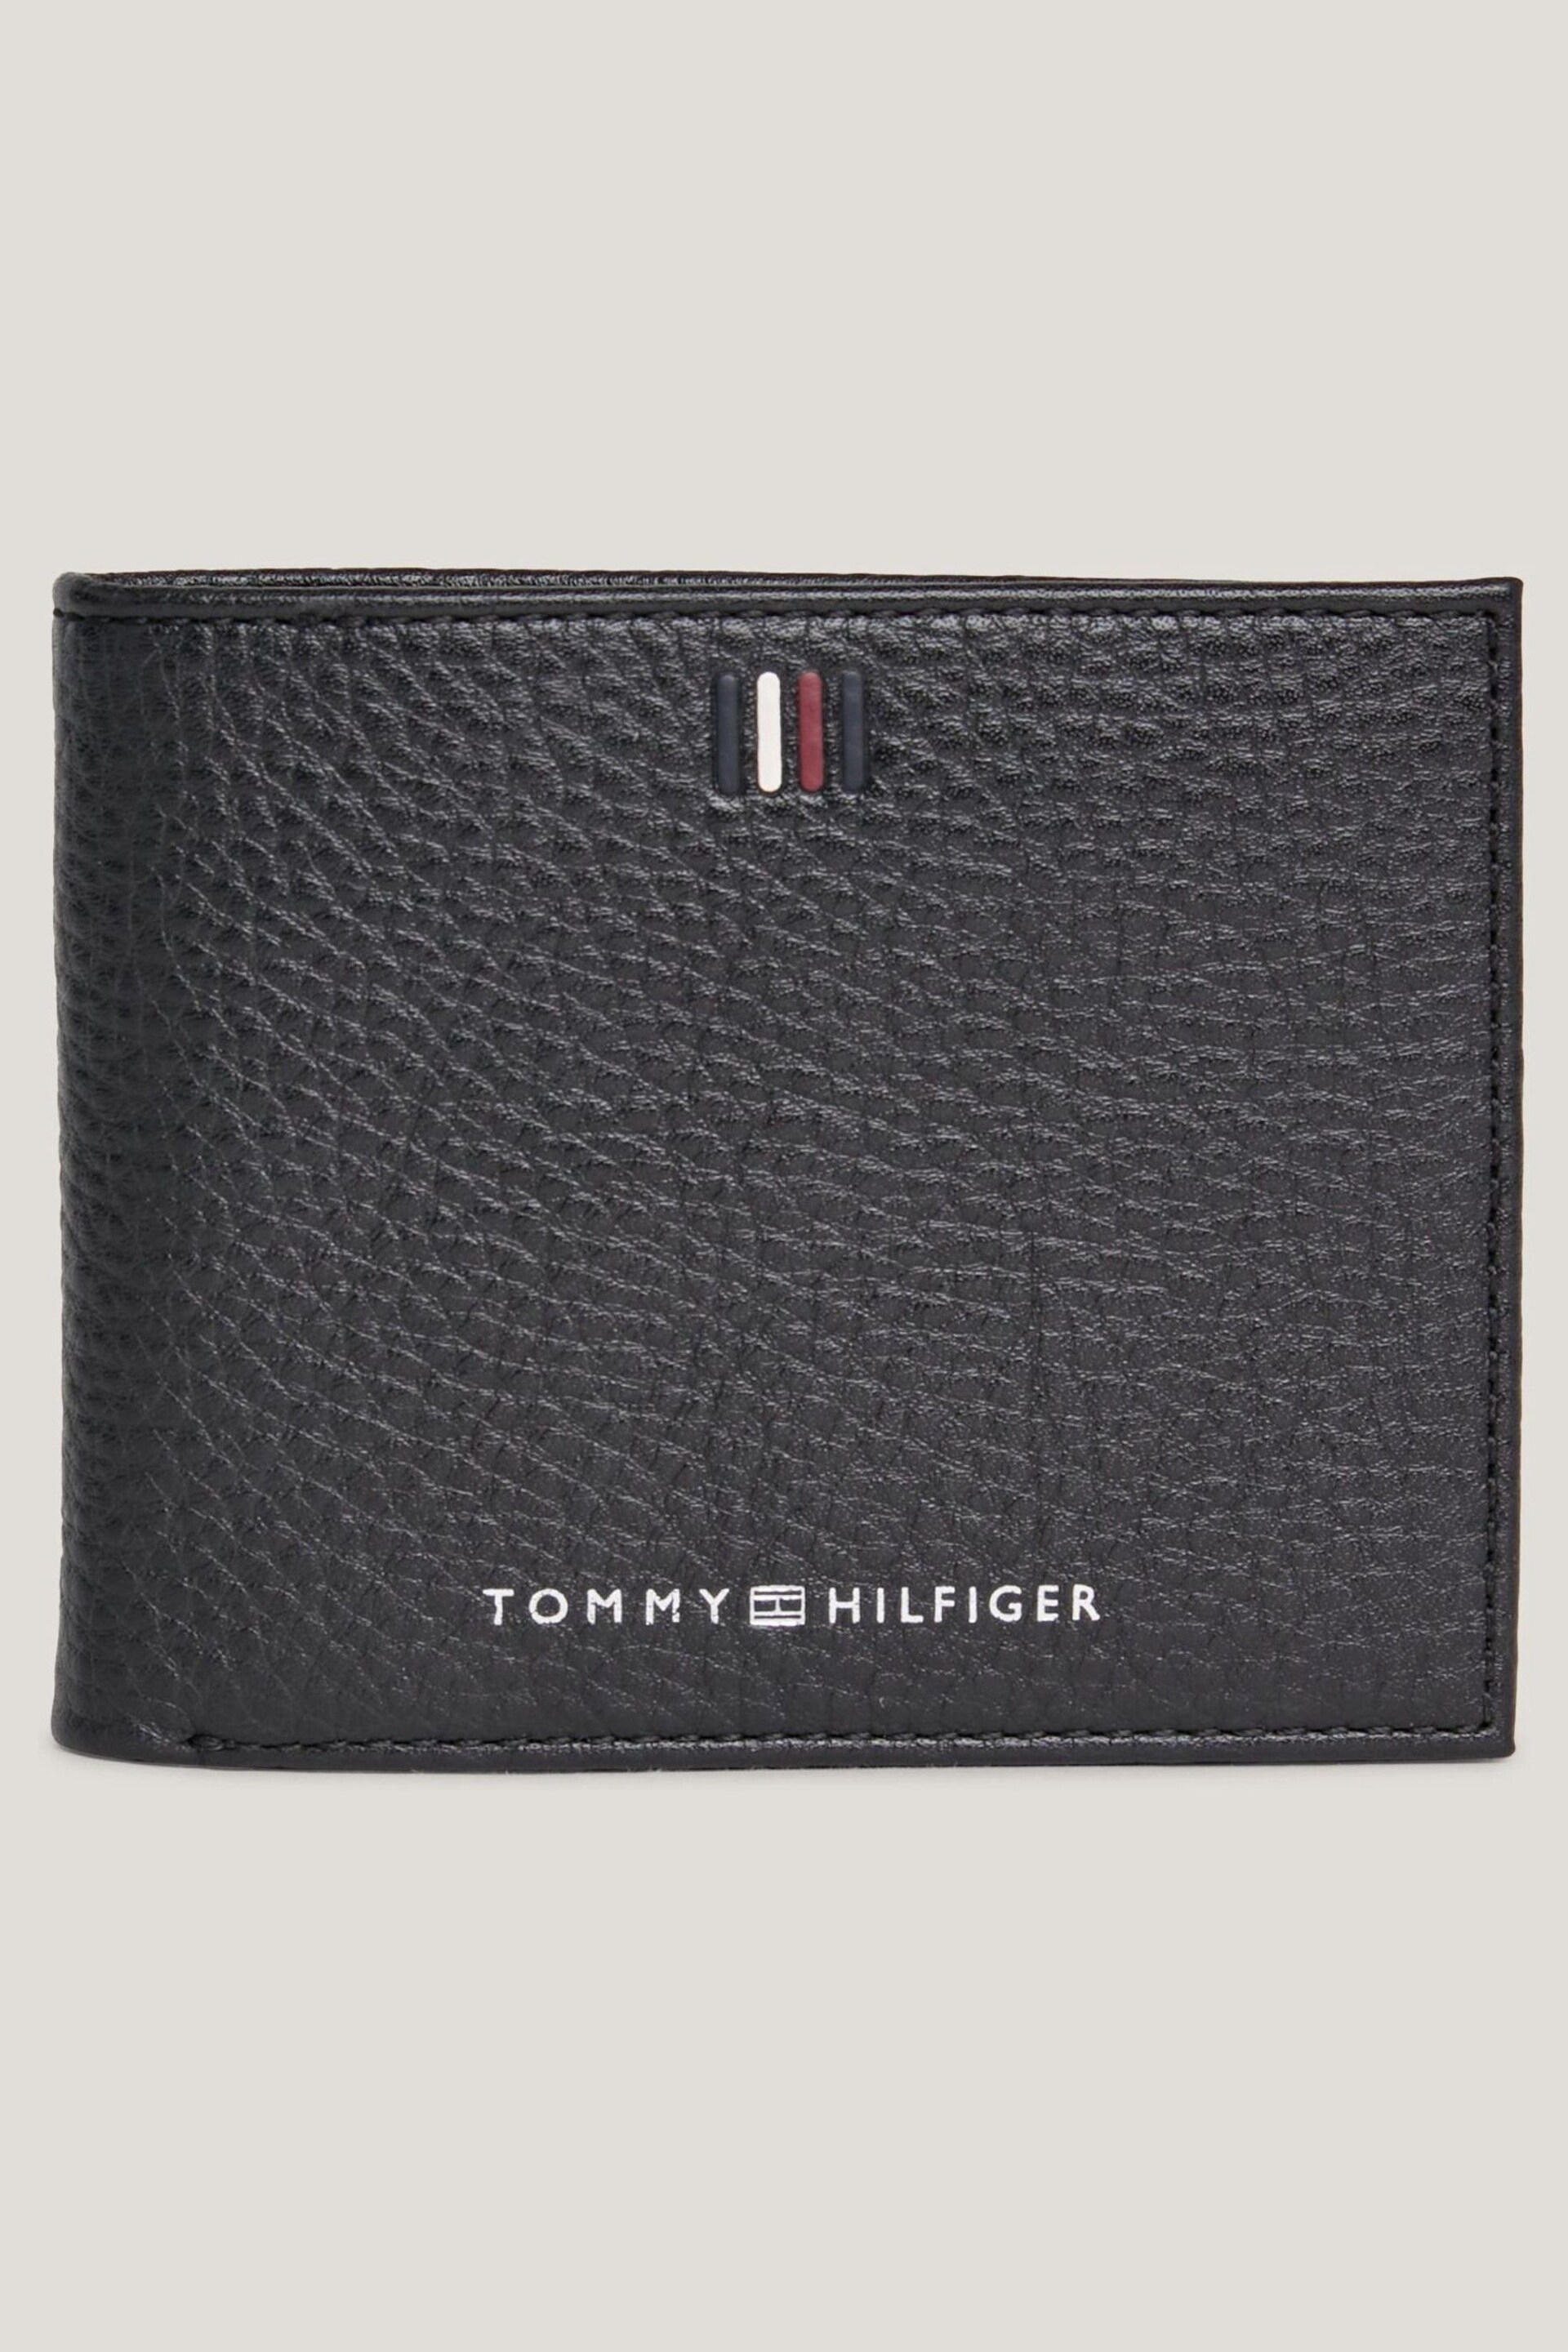 Tommy Hilfiger Central Black Mini Card Wallet - Image 1 of 3